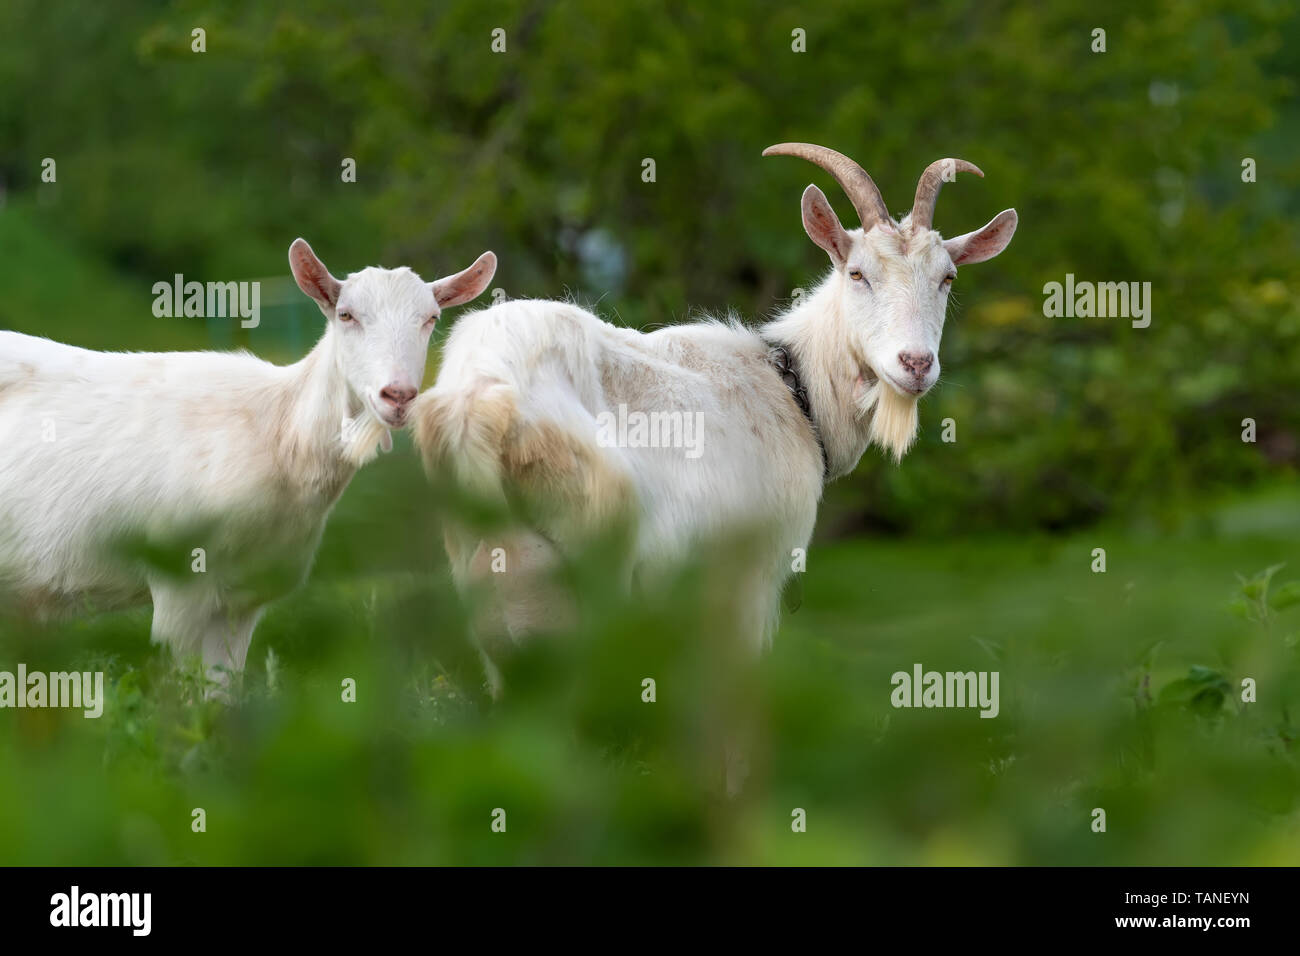 Schließen Sie zwei weiße Ziege stehend auf grünem Gras Stockfoto